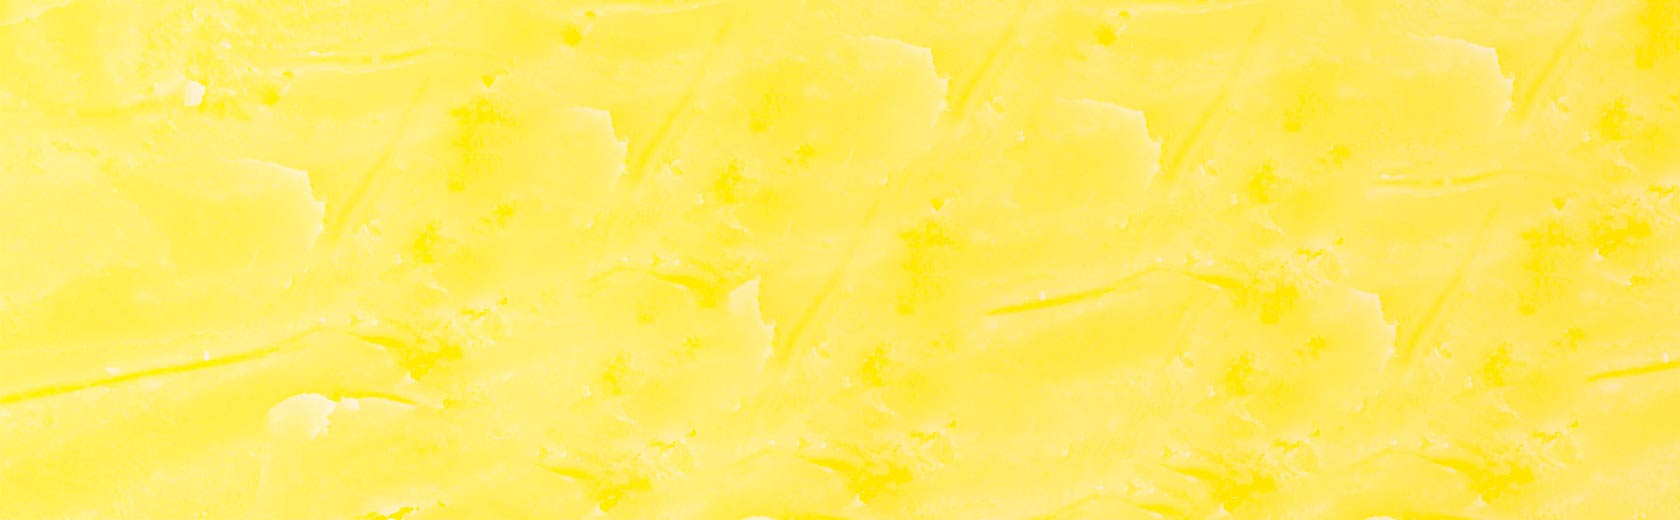 La richesse du beurre réside dans sa complexité - Lactalis Ingredients